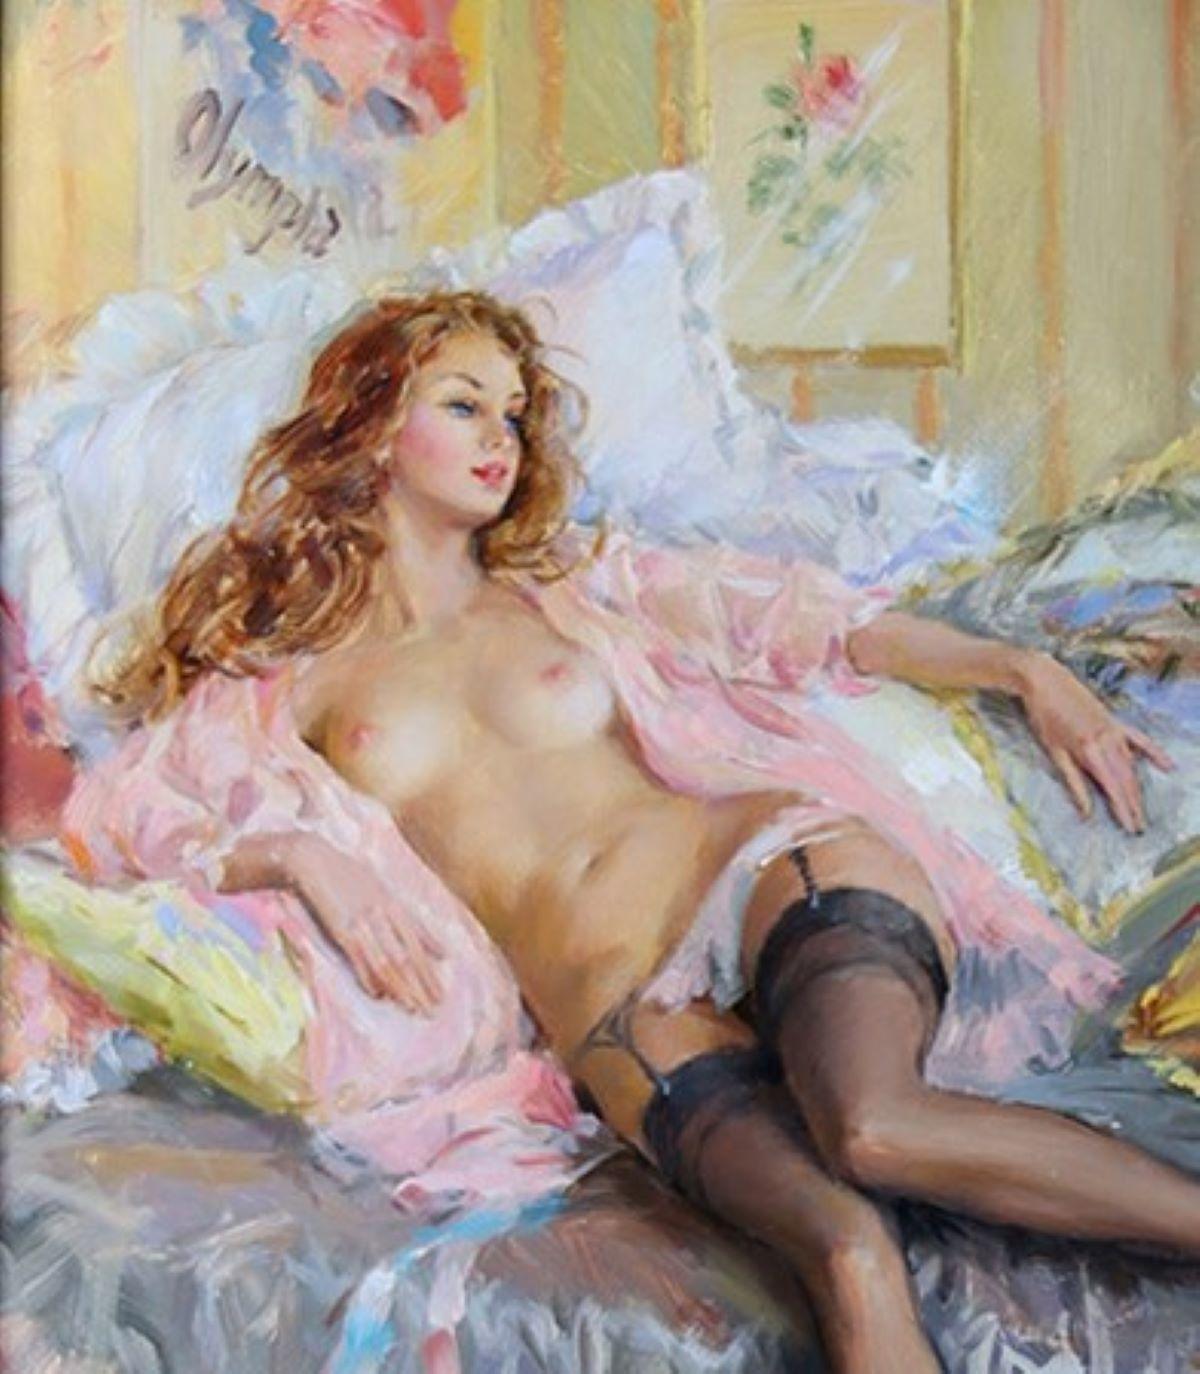 Konstantin Rasumow 
(Geboren 1974) Russisch

Elegante nackte Dame auf einem Bett liegend in einem rosa Peignoir 
Öl auf Leinwand: 14 x 11 Zoll. Rahmen: 20 x 17 Zoll. 

Konstantin Razumovs Arbeiten wurden in den letzten 25 Jahren mehrfach auf